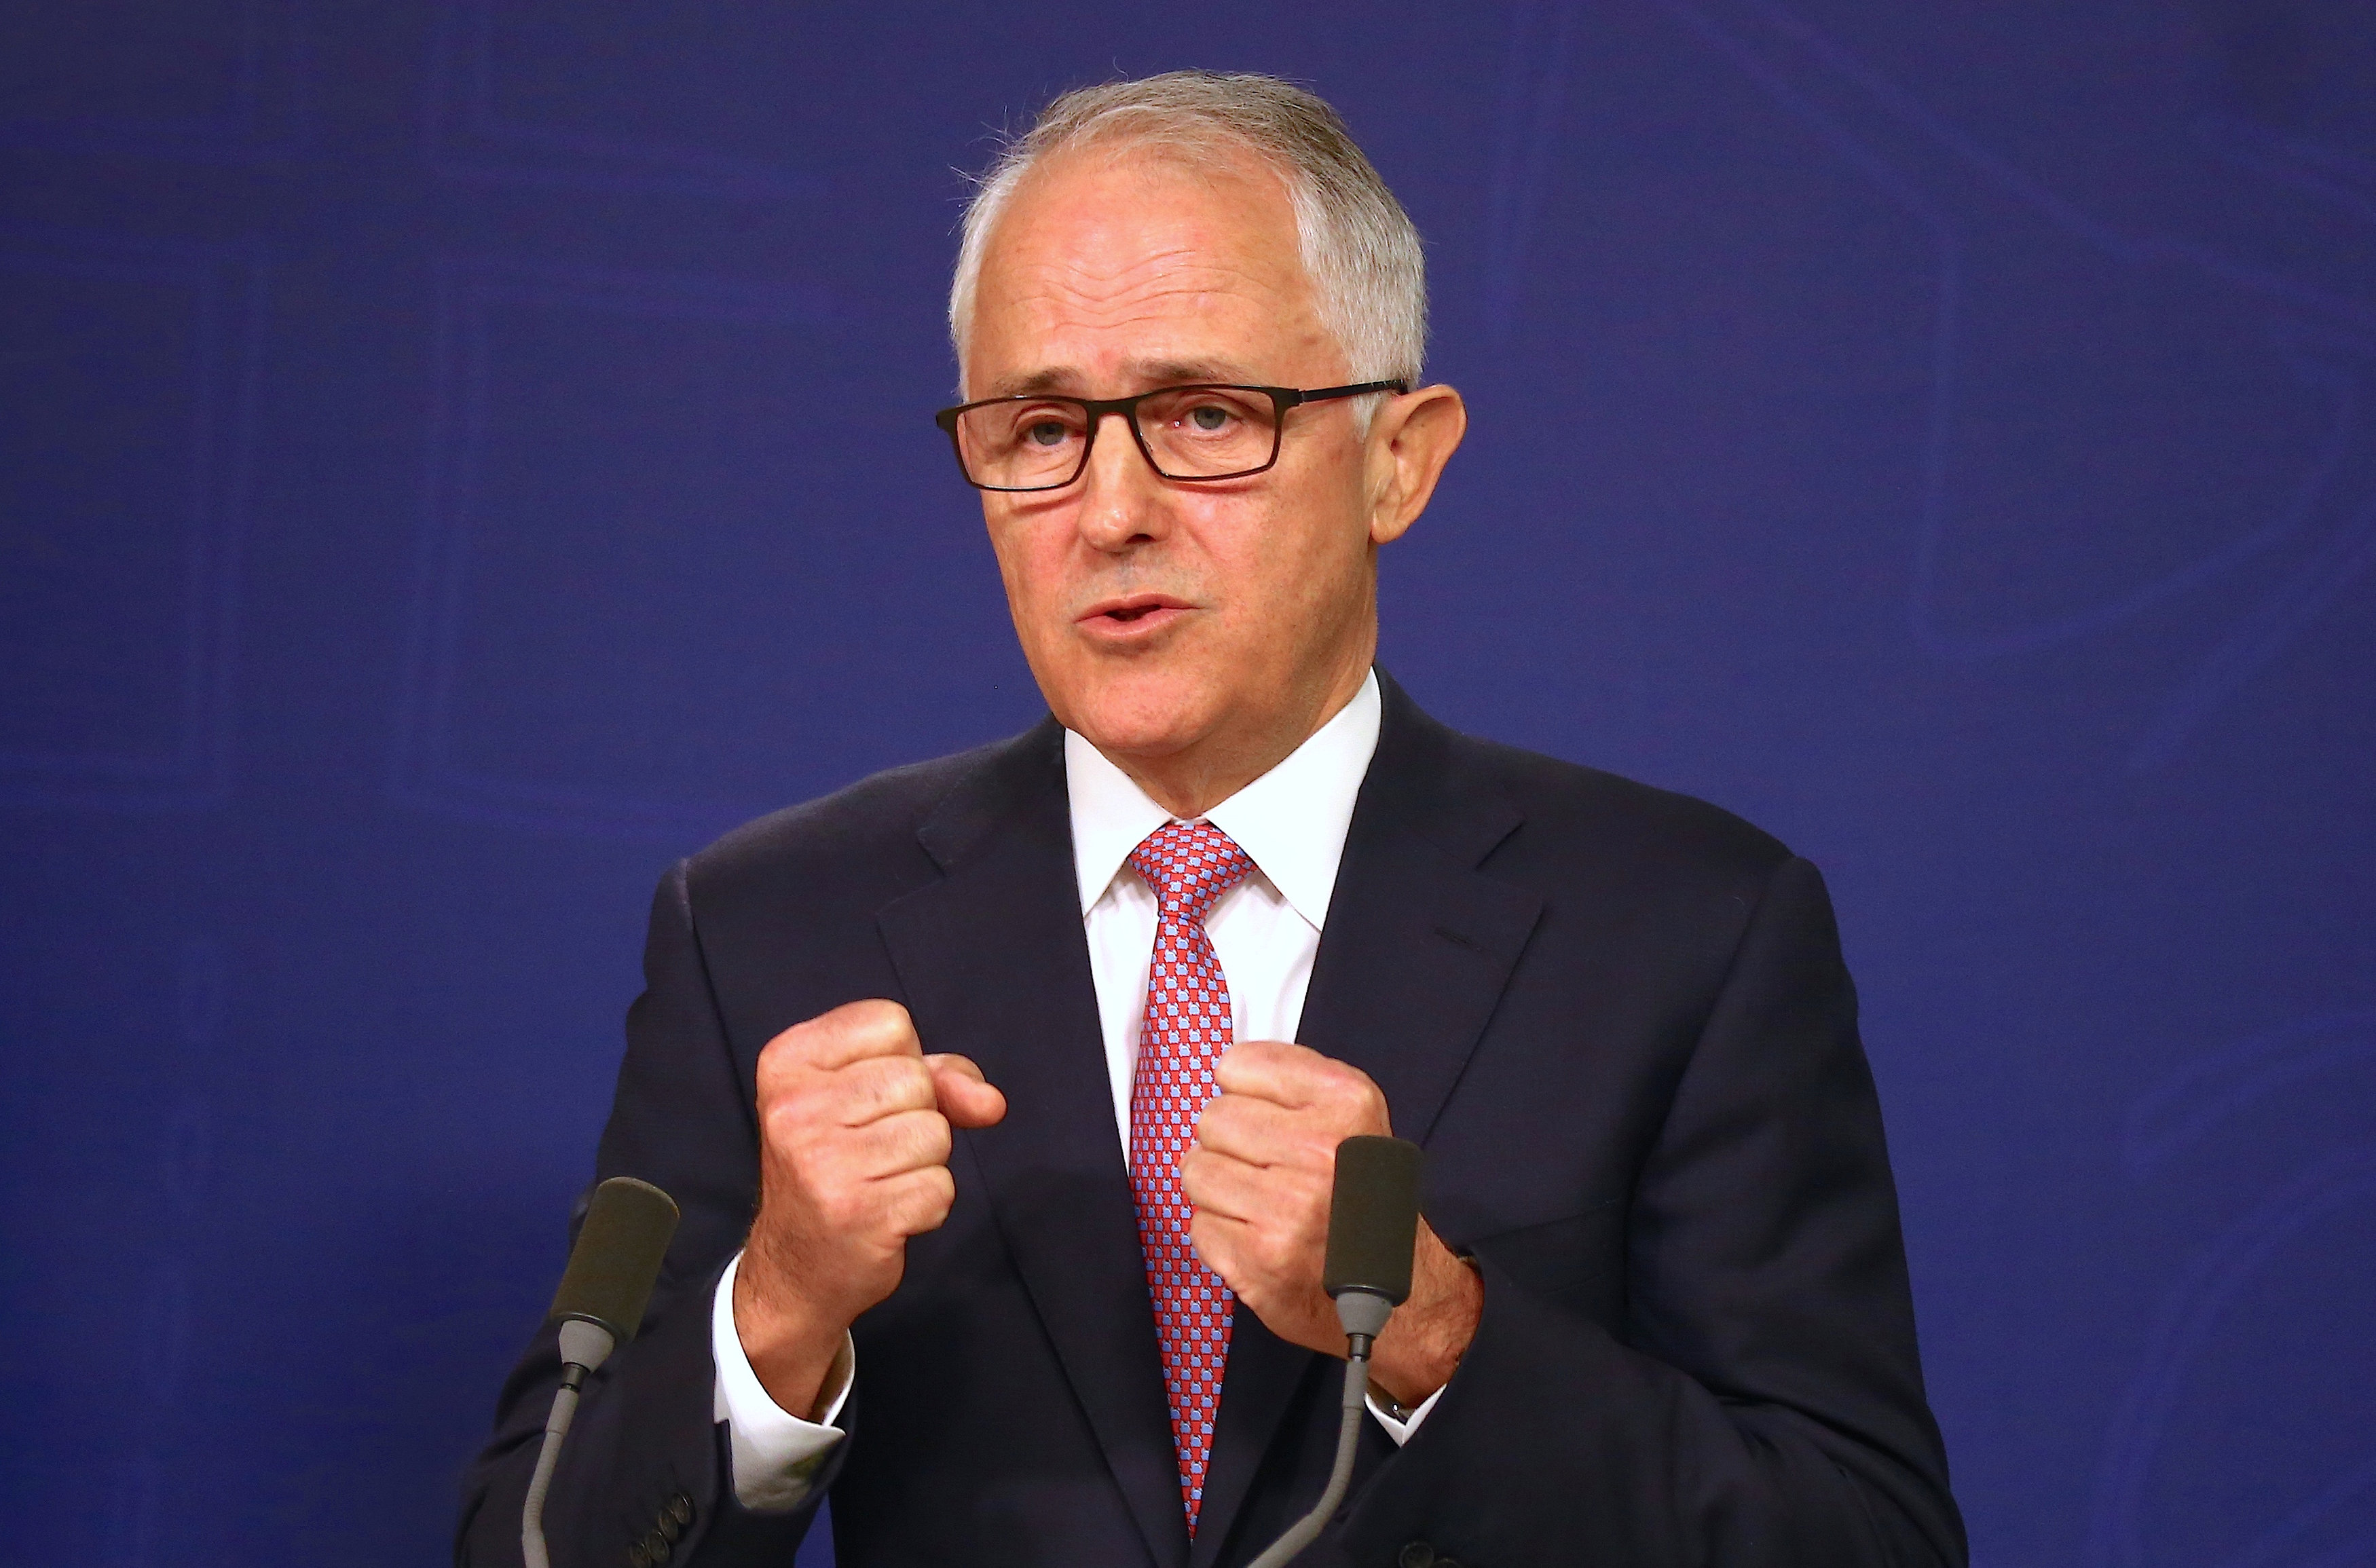 Thủ tướng Úc Malcolm Turnbull  phát biểu trong cuộc họp báo về vụ khủng bố tại Sydney ngày 23-12 - ảnh: Reuters